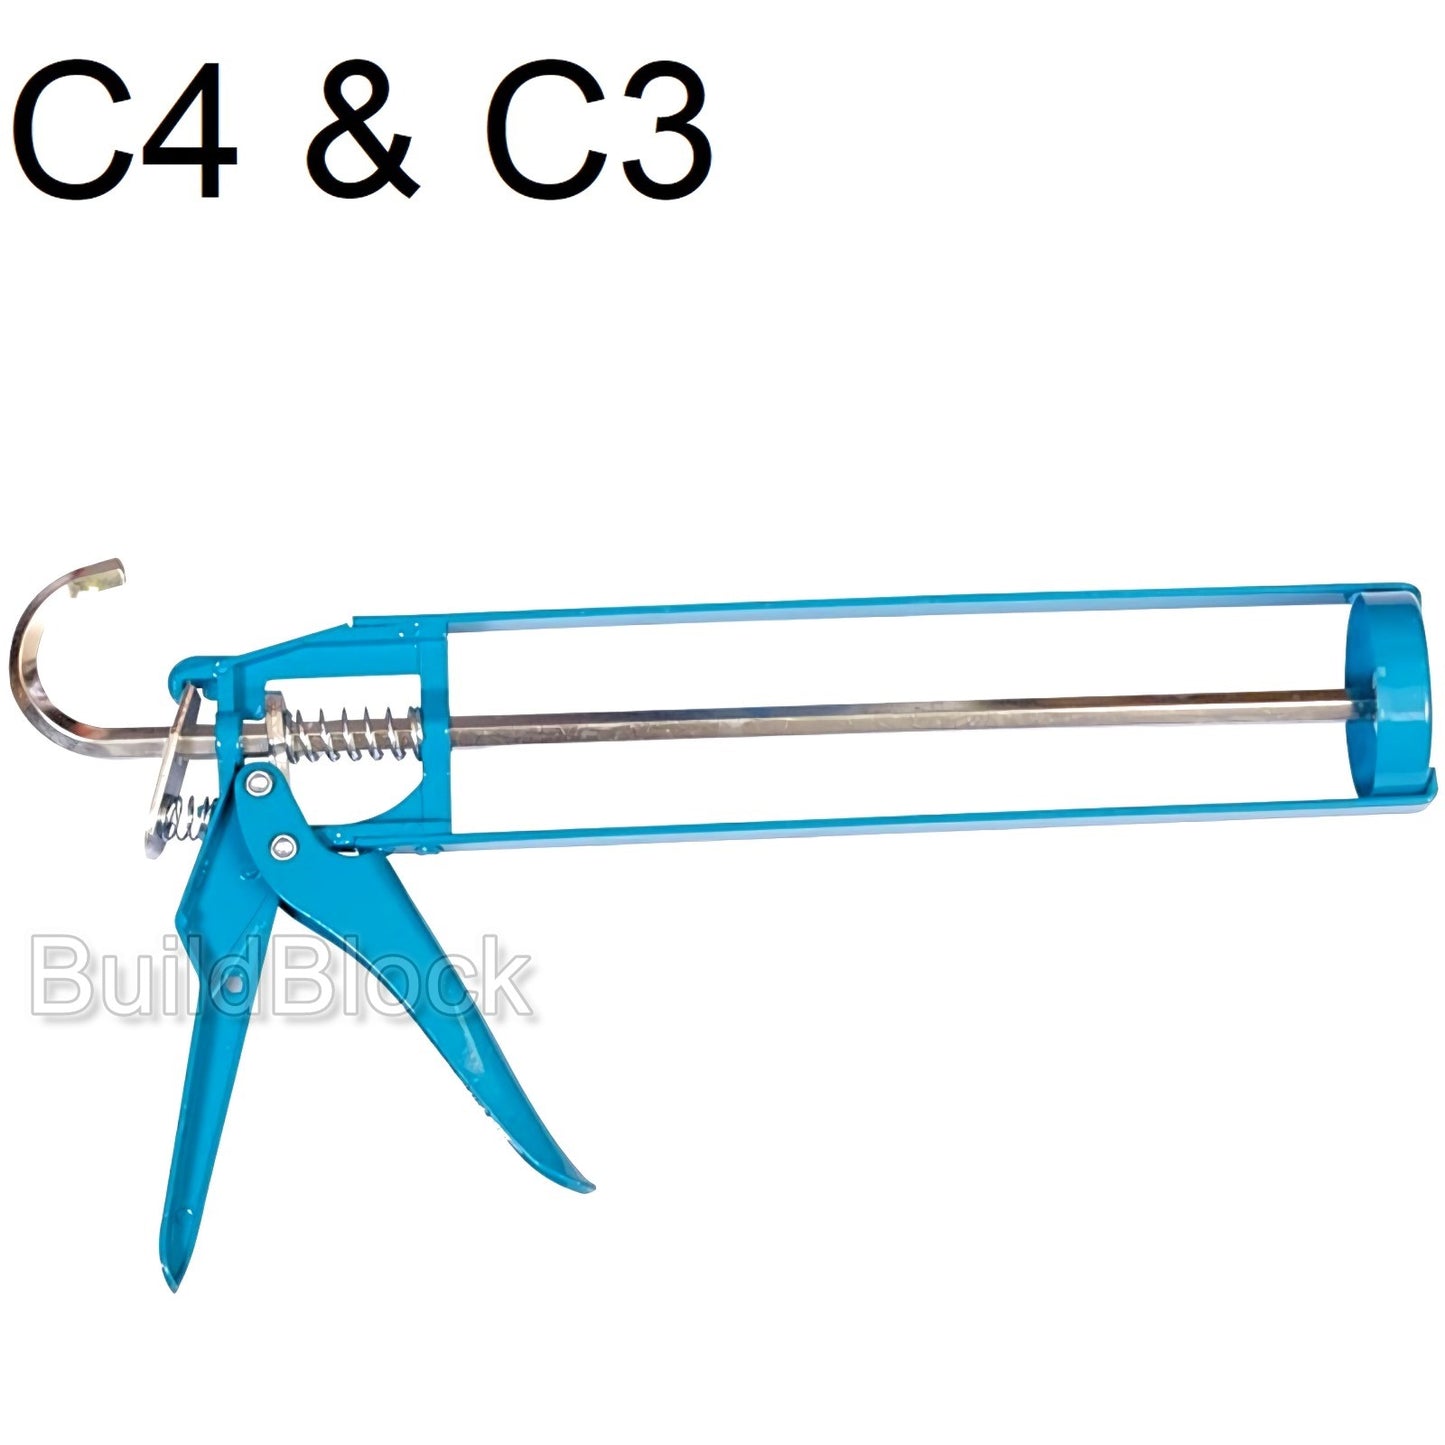 C3 & C4 Skeleton Gun